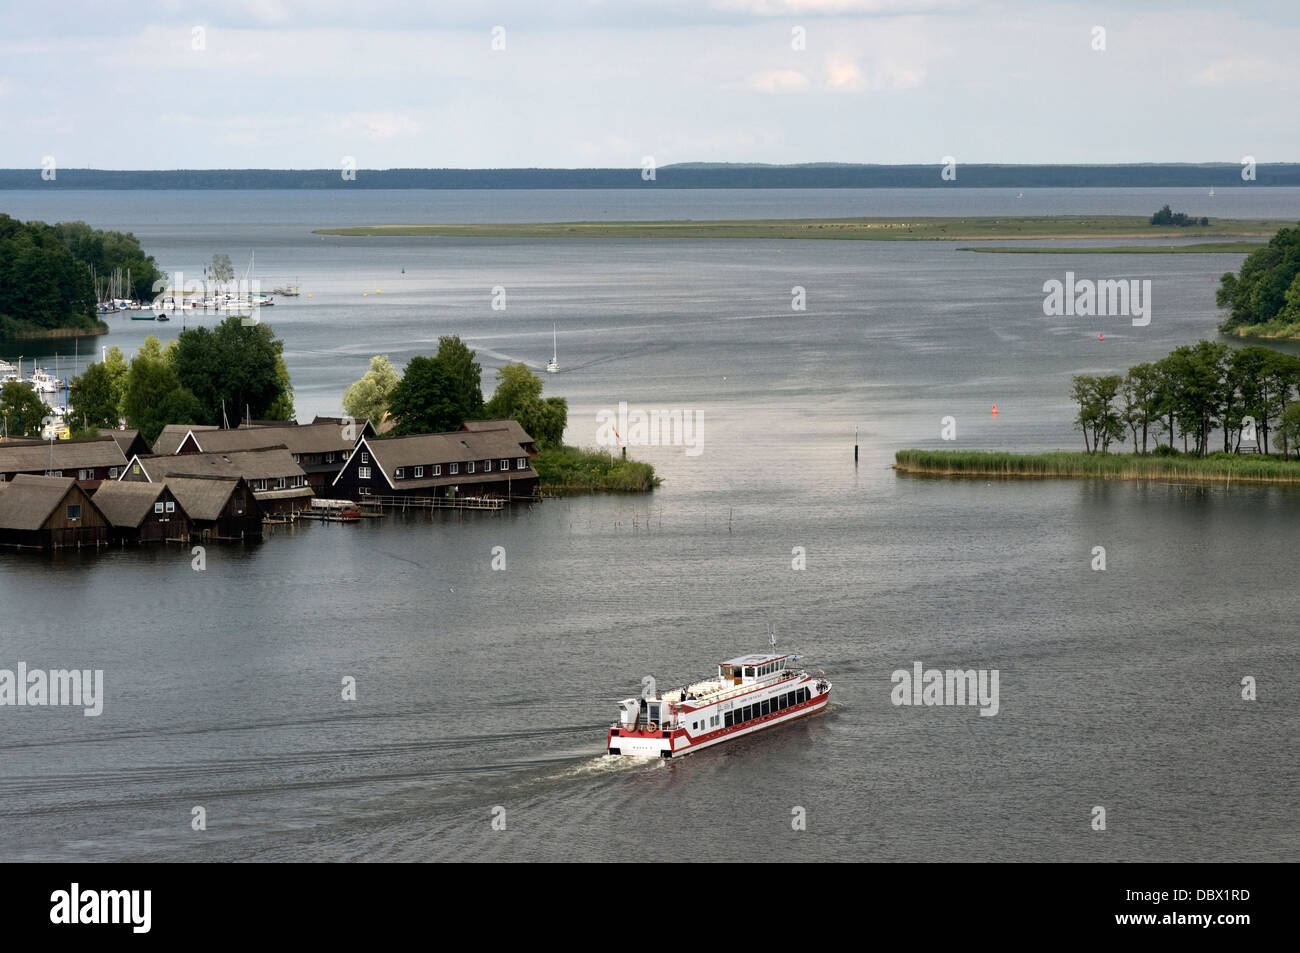 Boat houses on Müritz lake at Roebel, Mecklenburg, Germany. Stock Photo